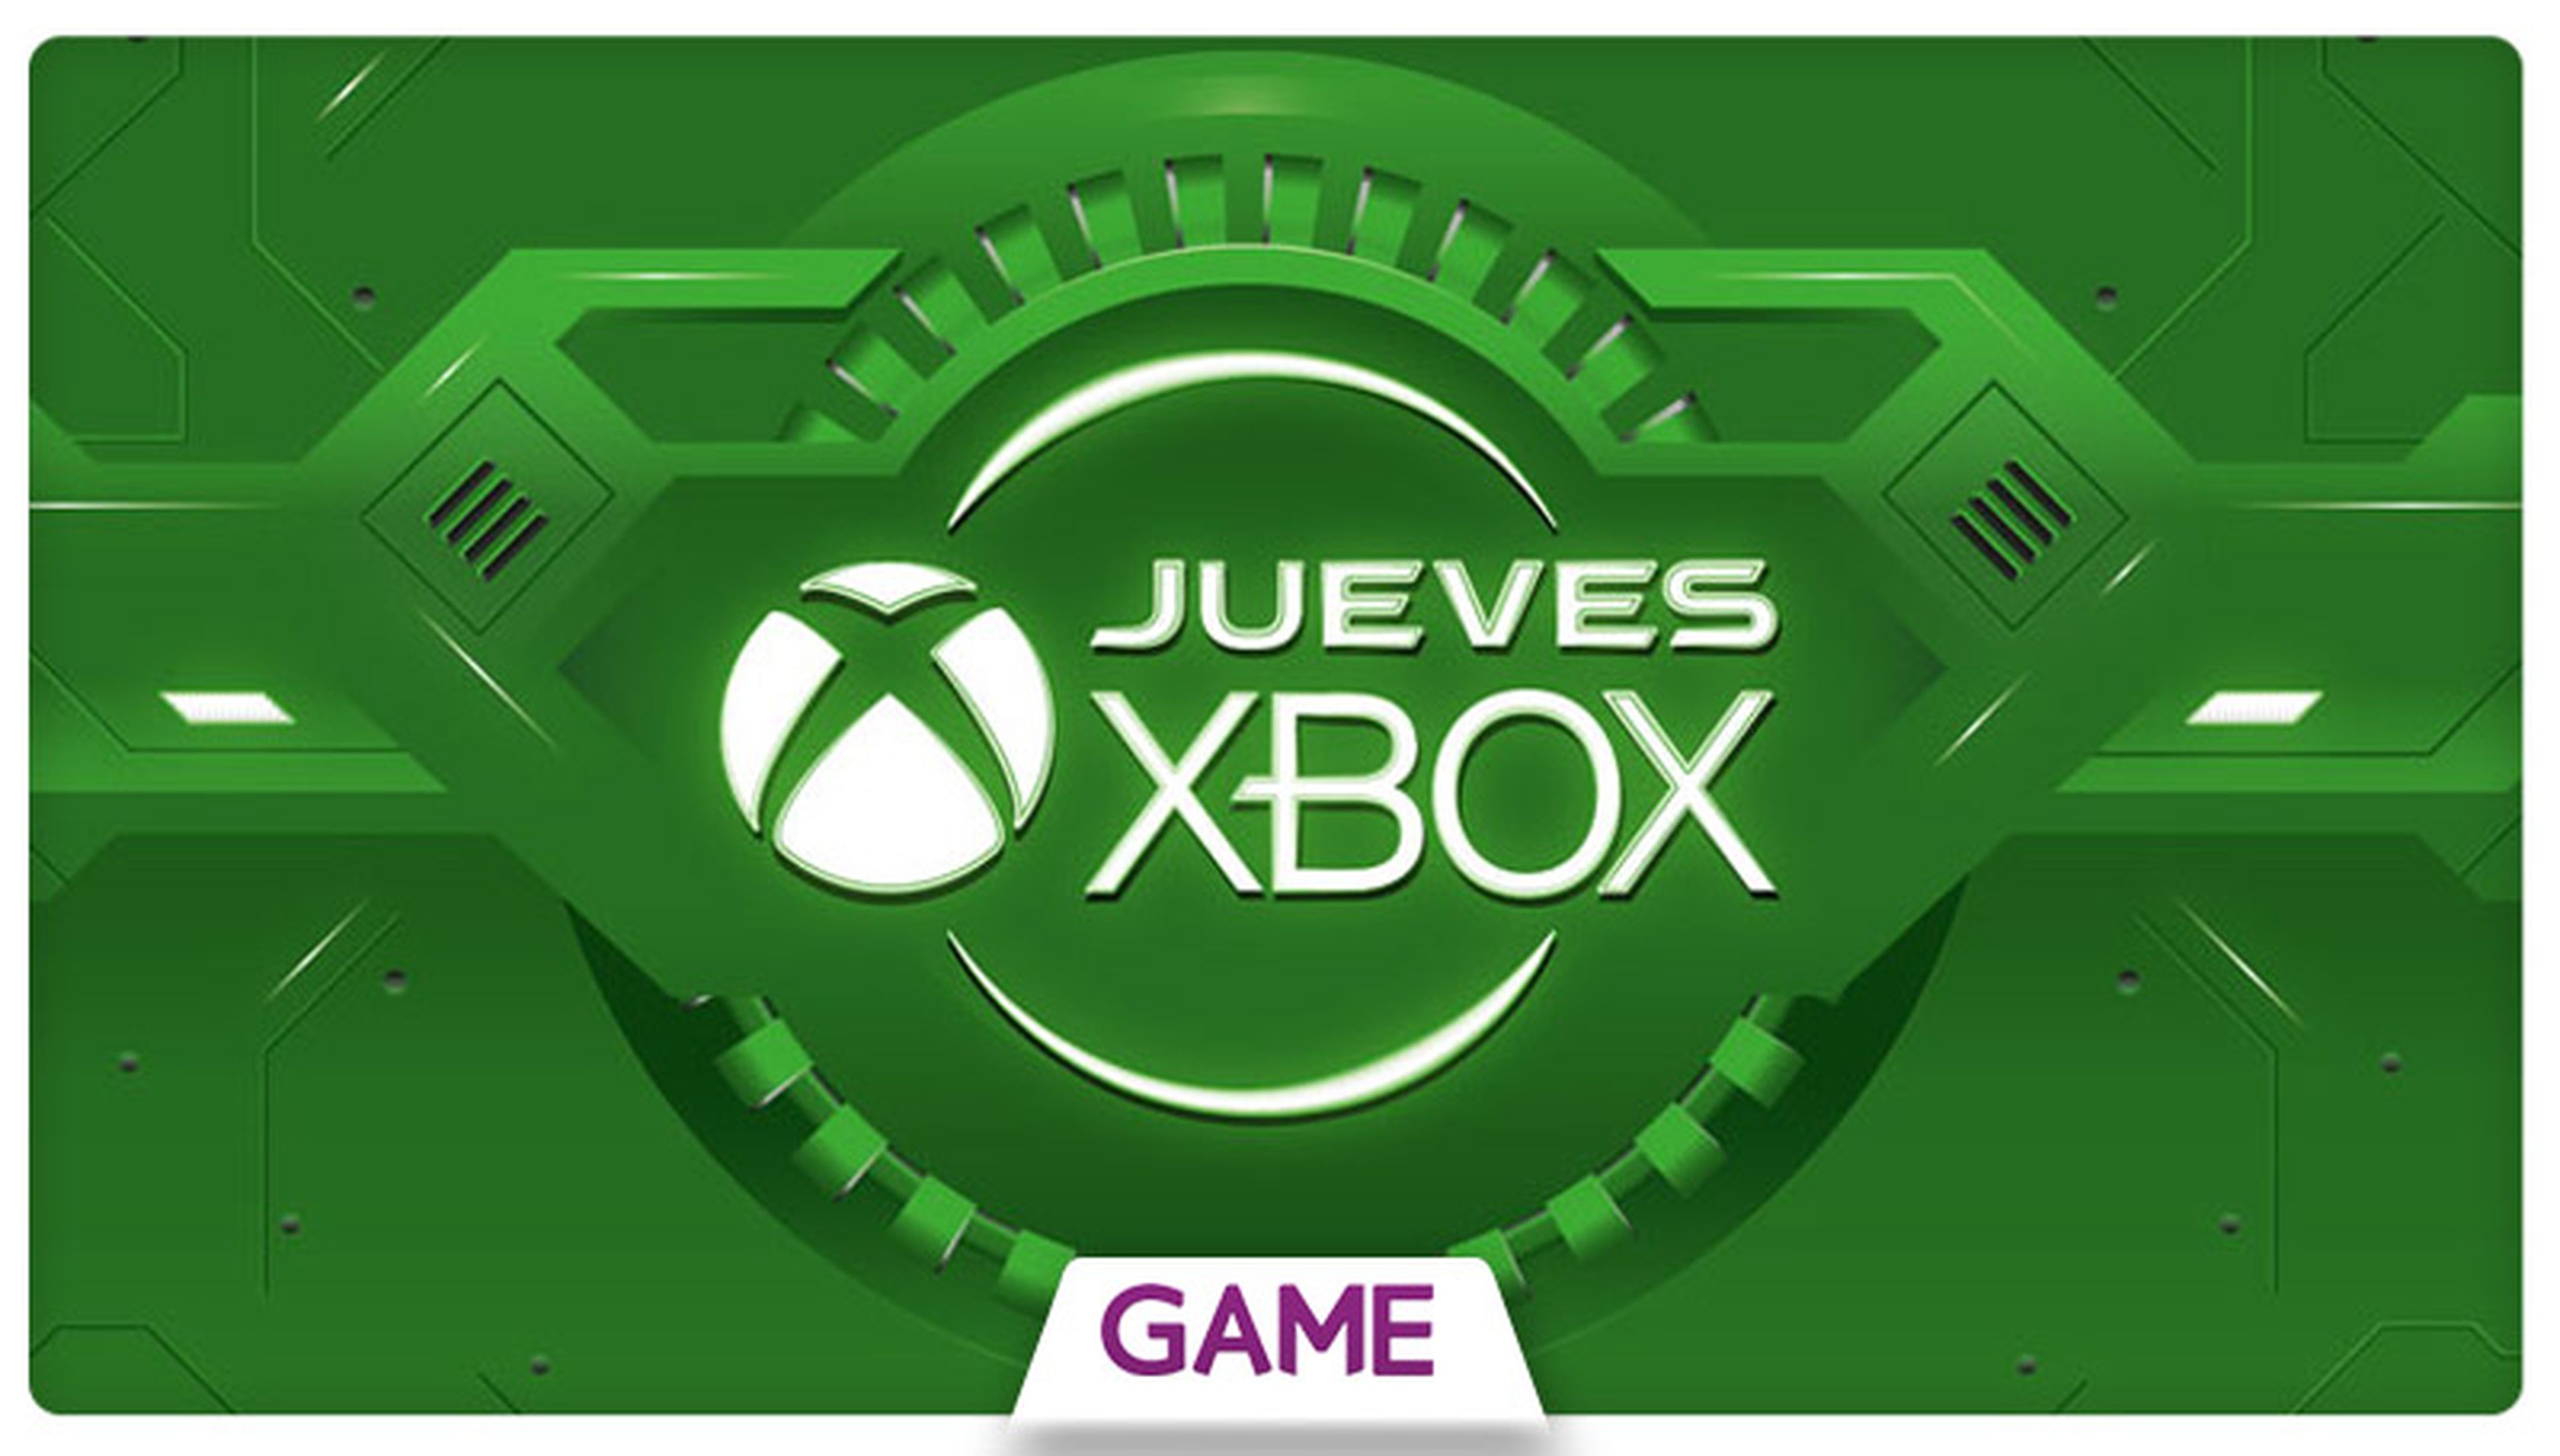 Jueves Xbox en GAME: Decimoséptima semana de ofertas